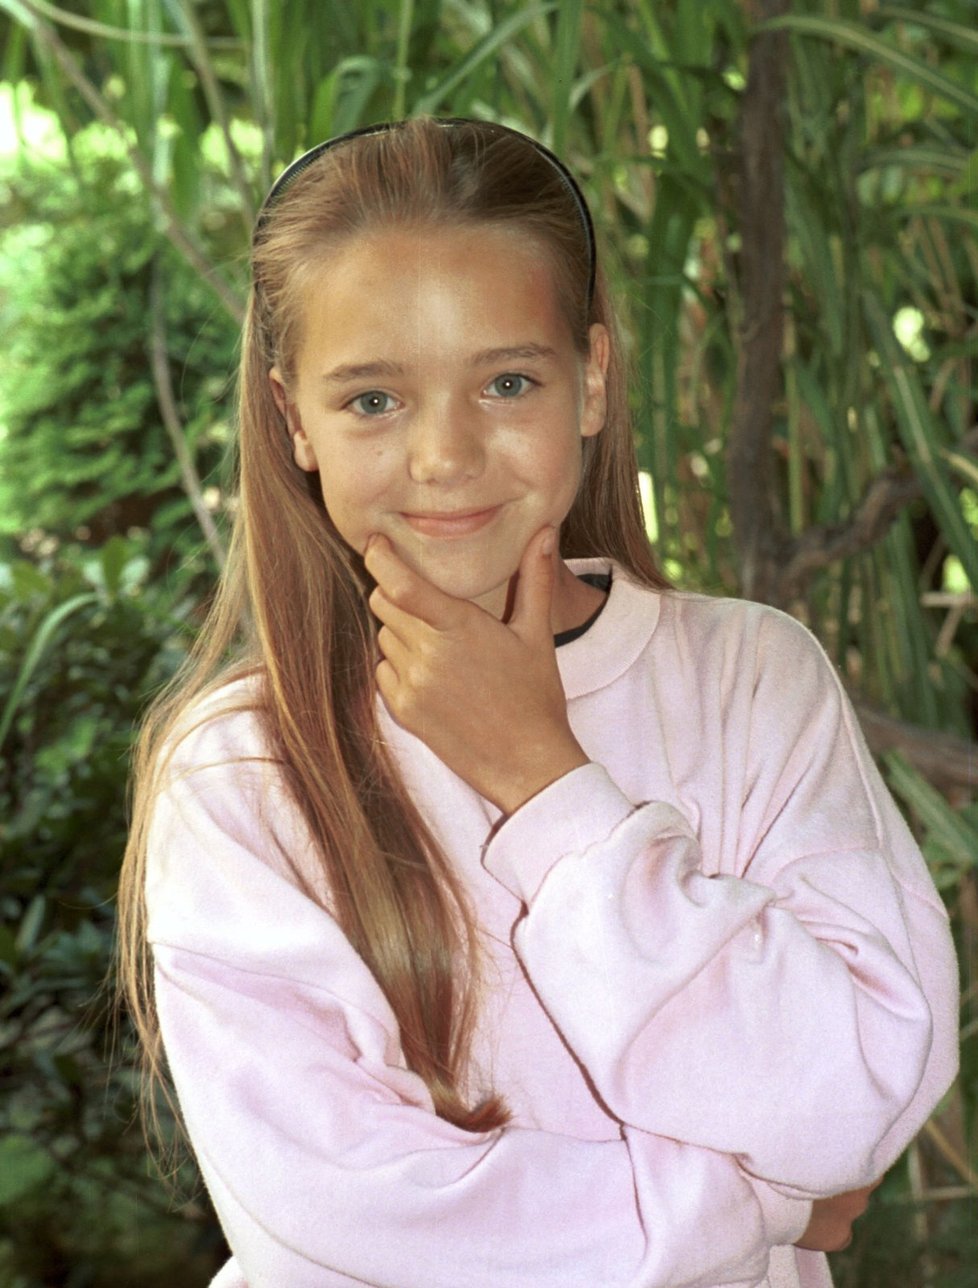 1993: Zapisuje se do povědomí jako moderátorka pořadu pro děti Marmeláda a vychází jí první stejnojmenné CD. V pouhých třinácti letech!